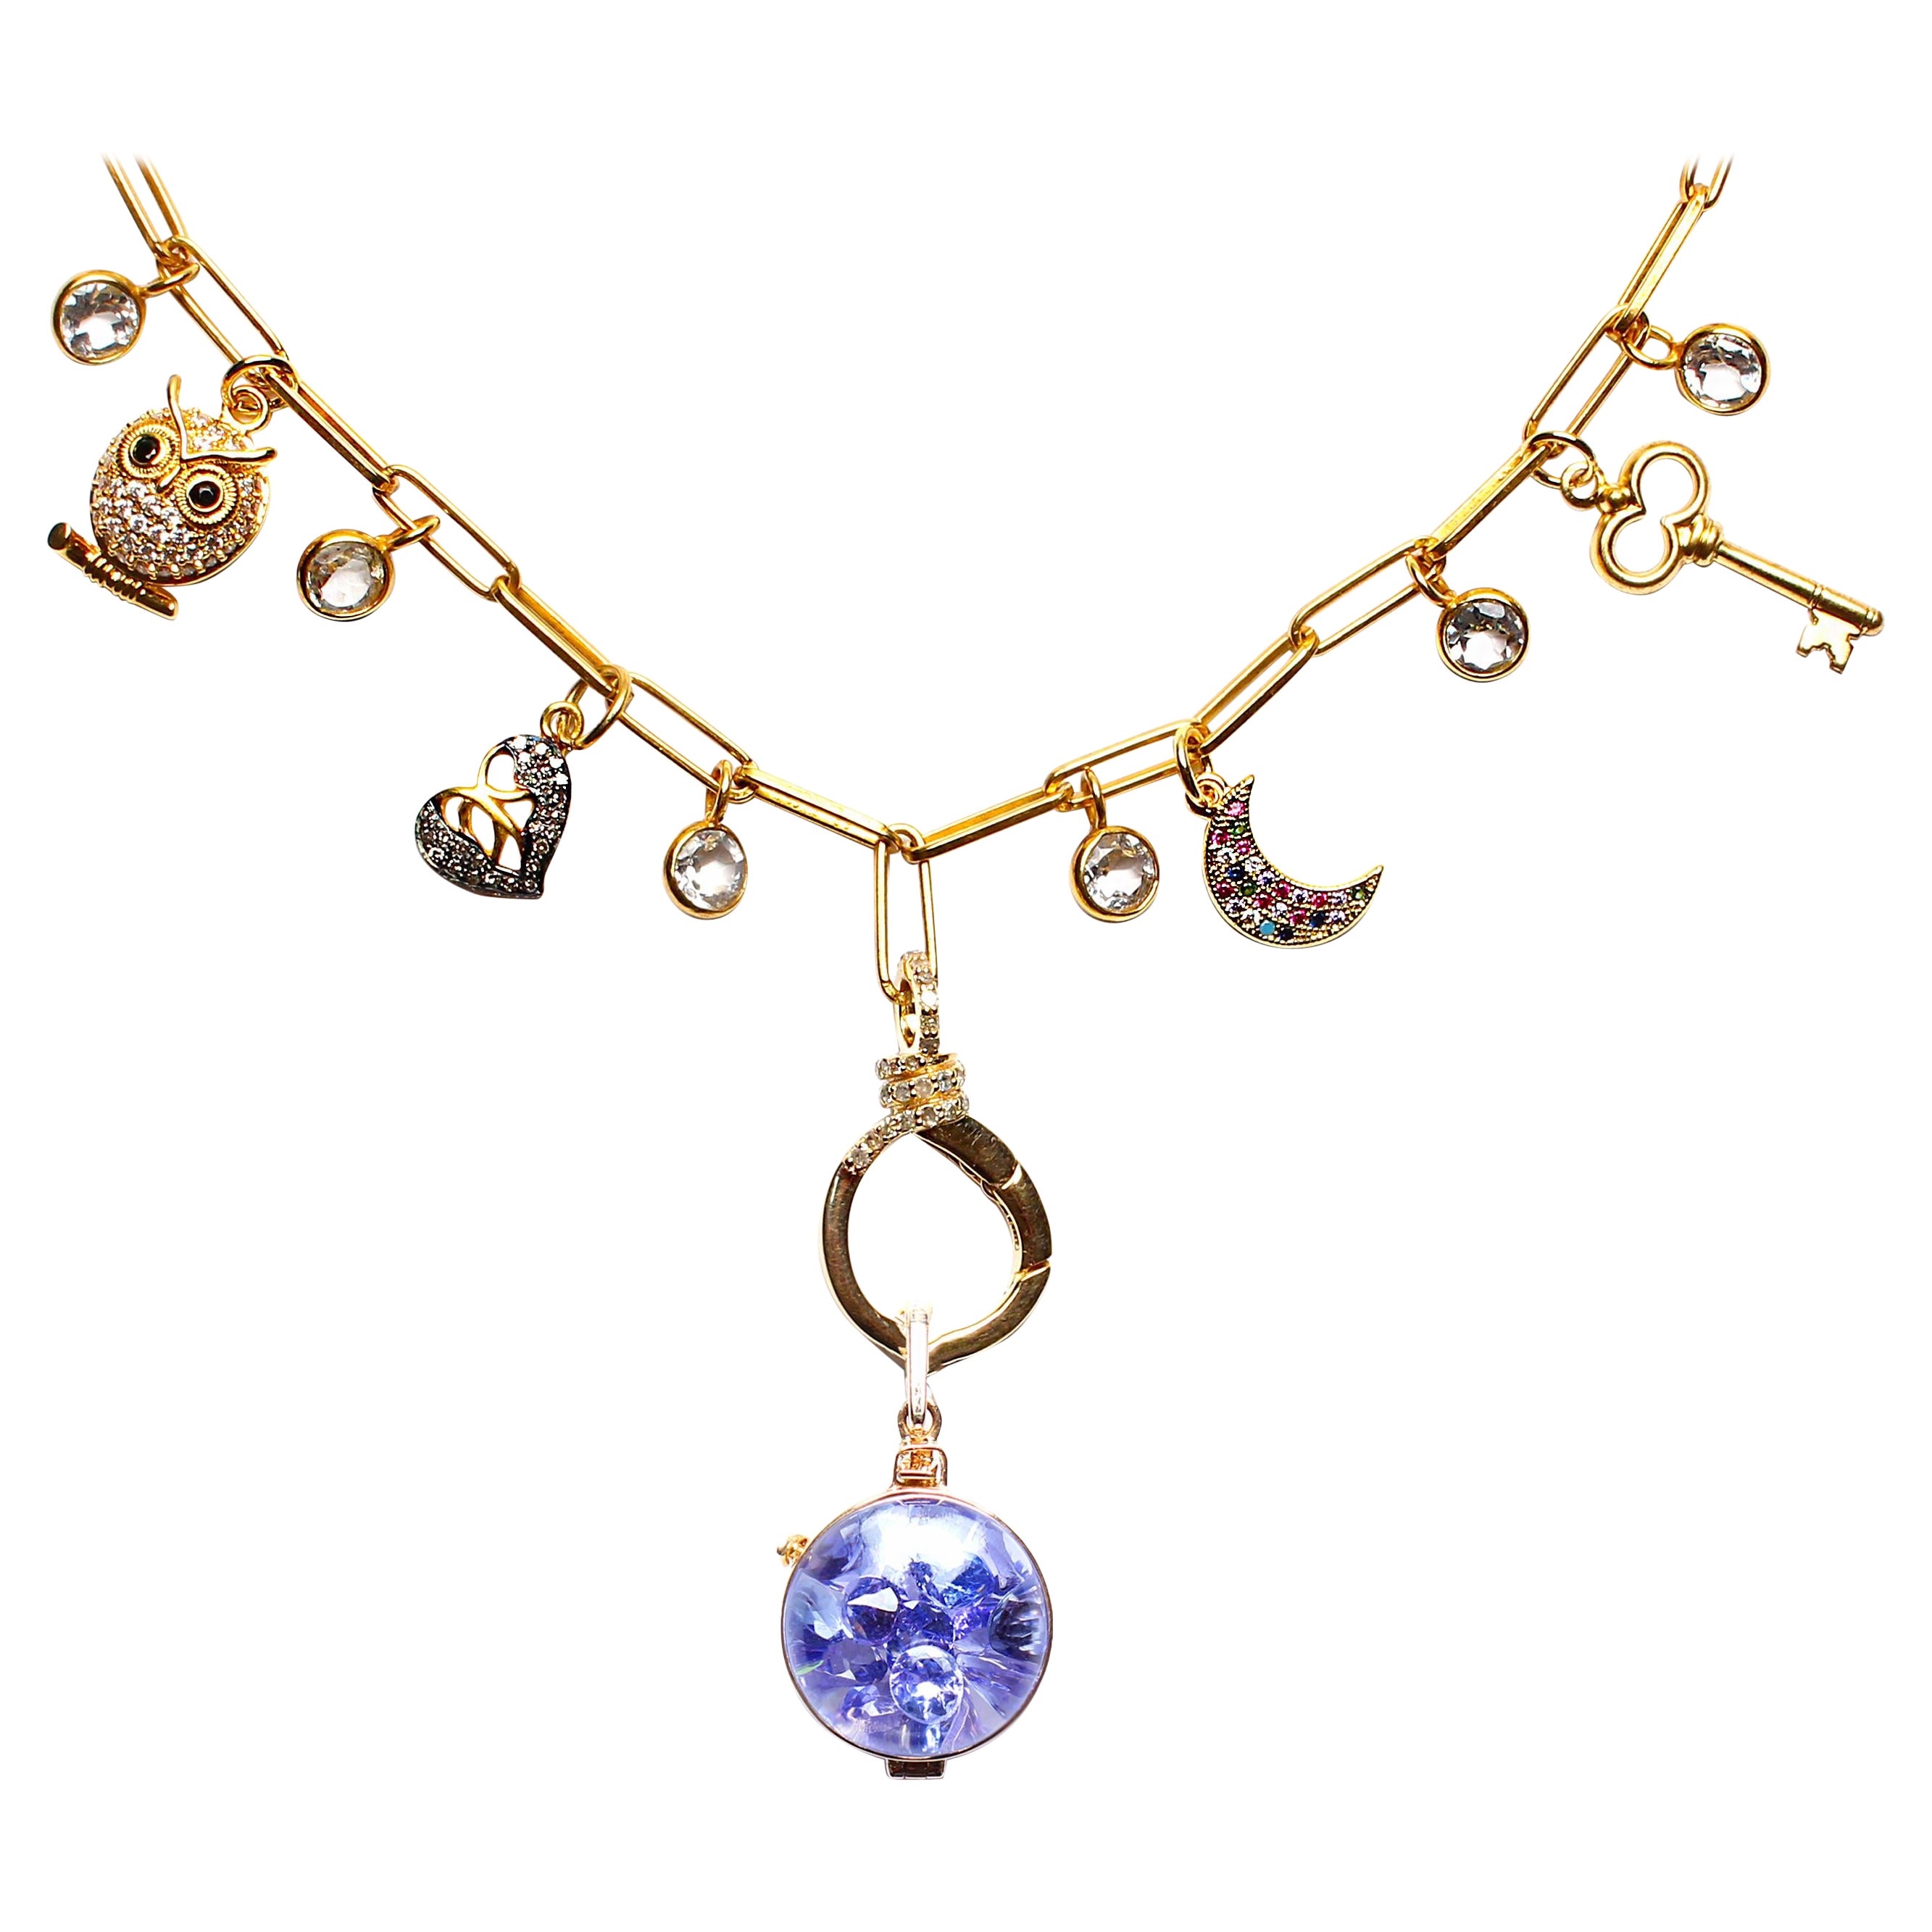 Clarissa Bronfman Signature Multi Charm Gold Ppr Clip Necklace & Tanzanite Charm For Sale